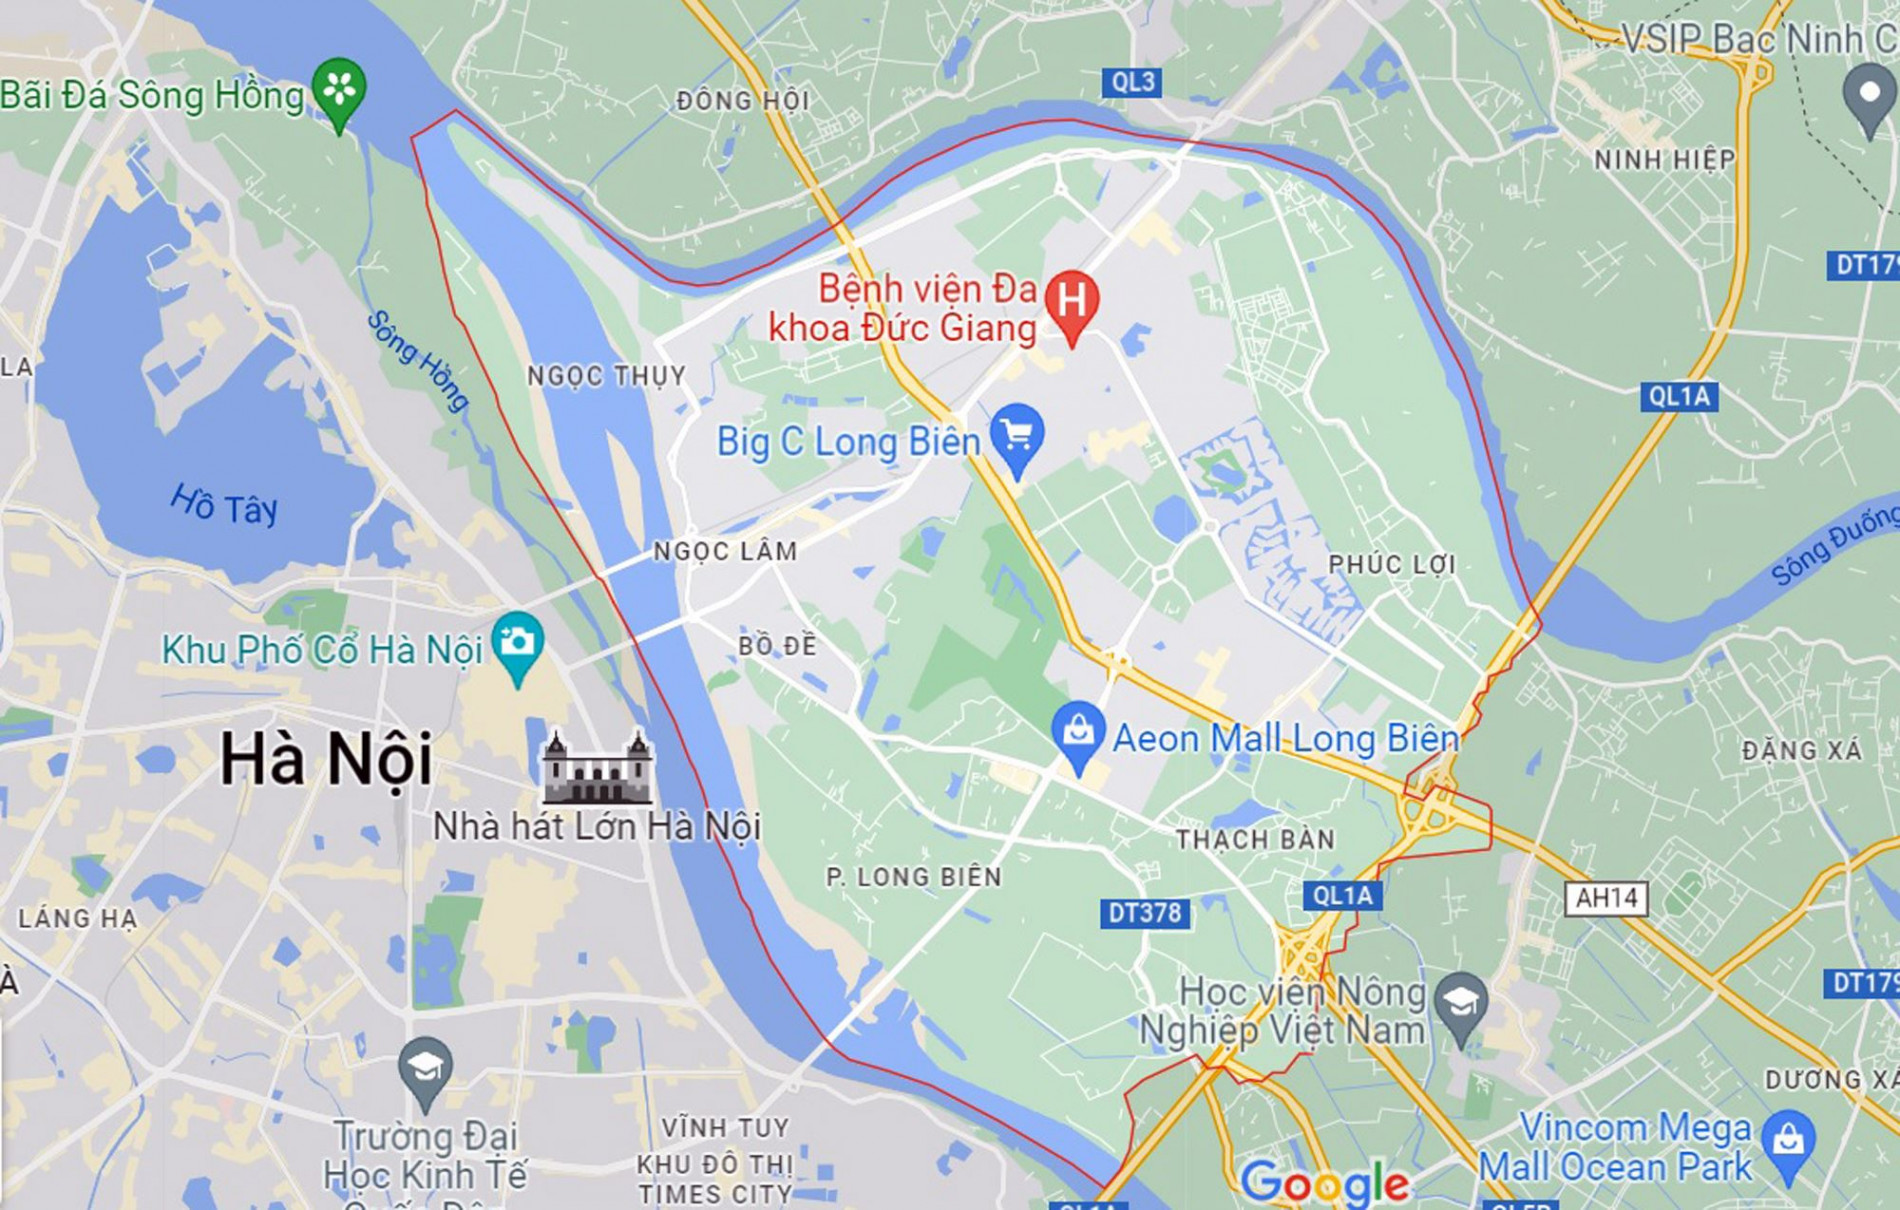 Những khu đất sắp thu hồi để xây trường học ở quận Long Biên, Hà Nội (phần 3)